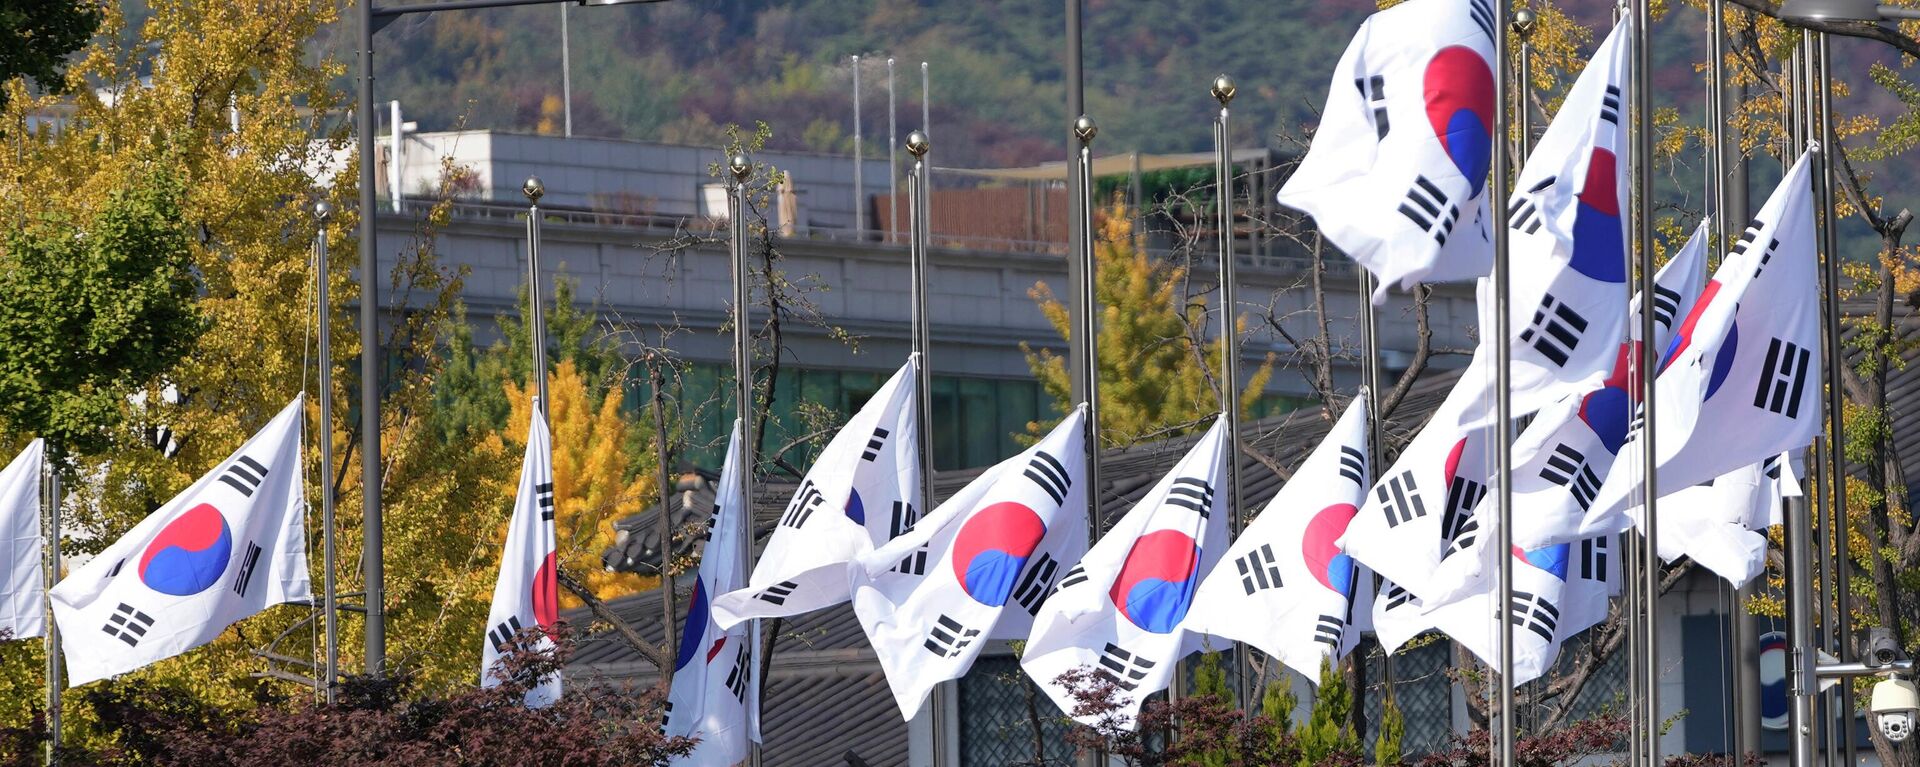 В Южной Корее объявлен национальный траур в связи с давкой в Сеуле, где погиб 151 человек - Sputnik Казахстан, 1920, 30.10.2022